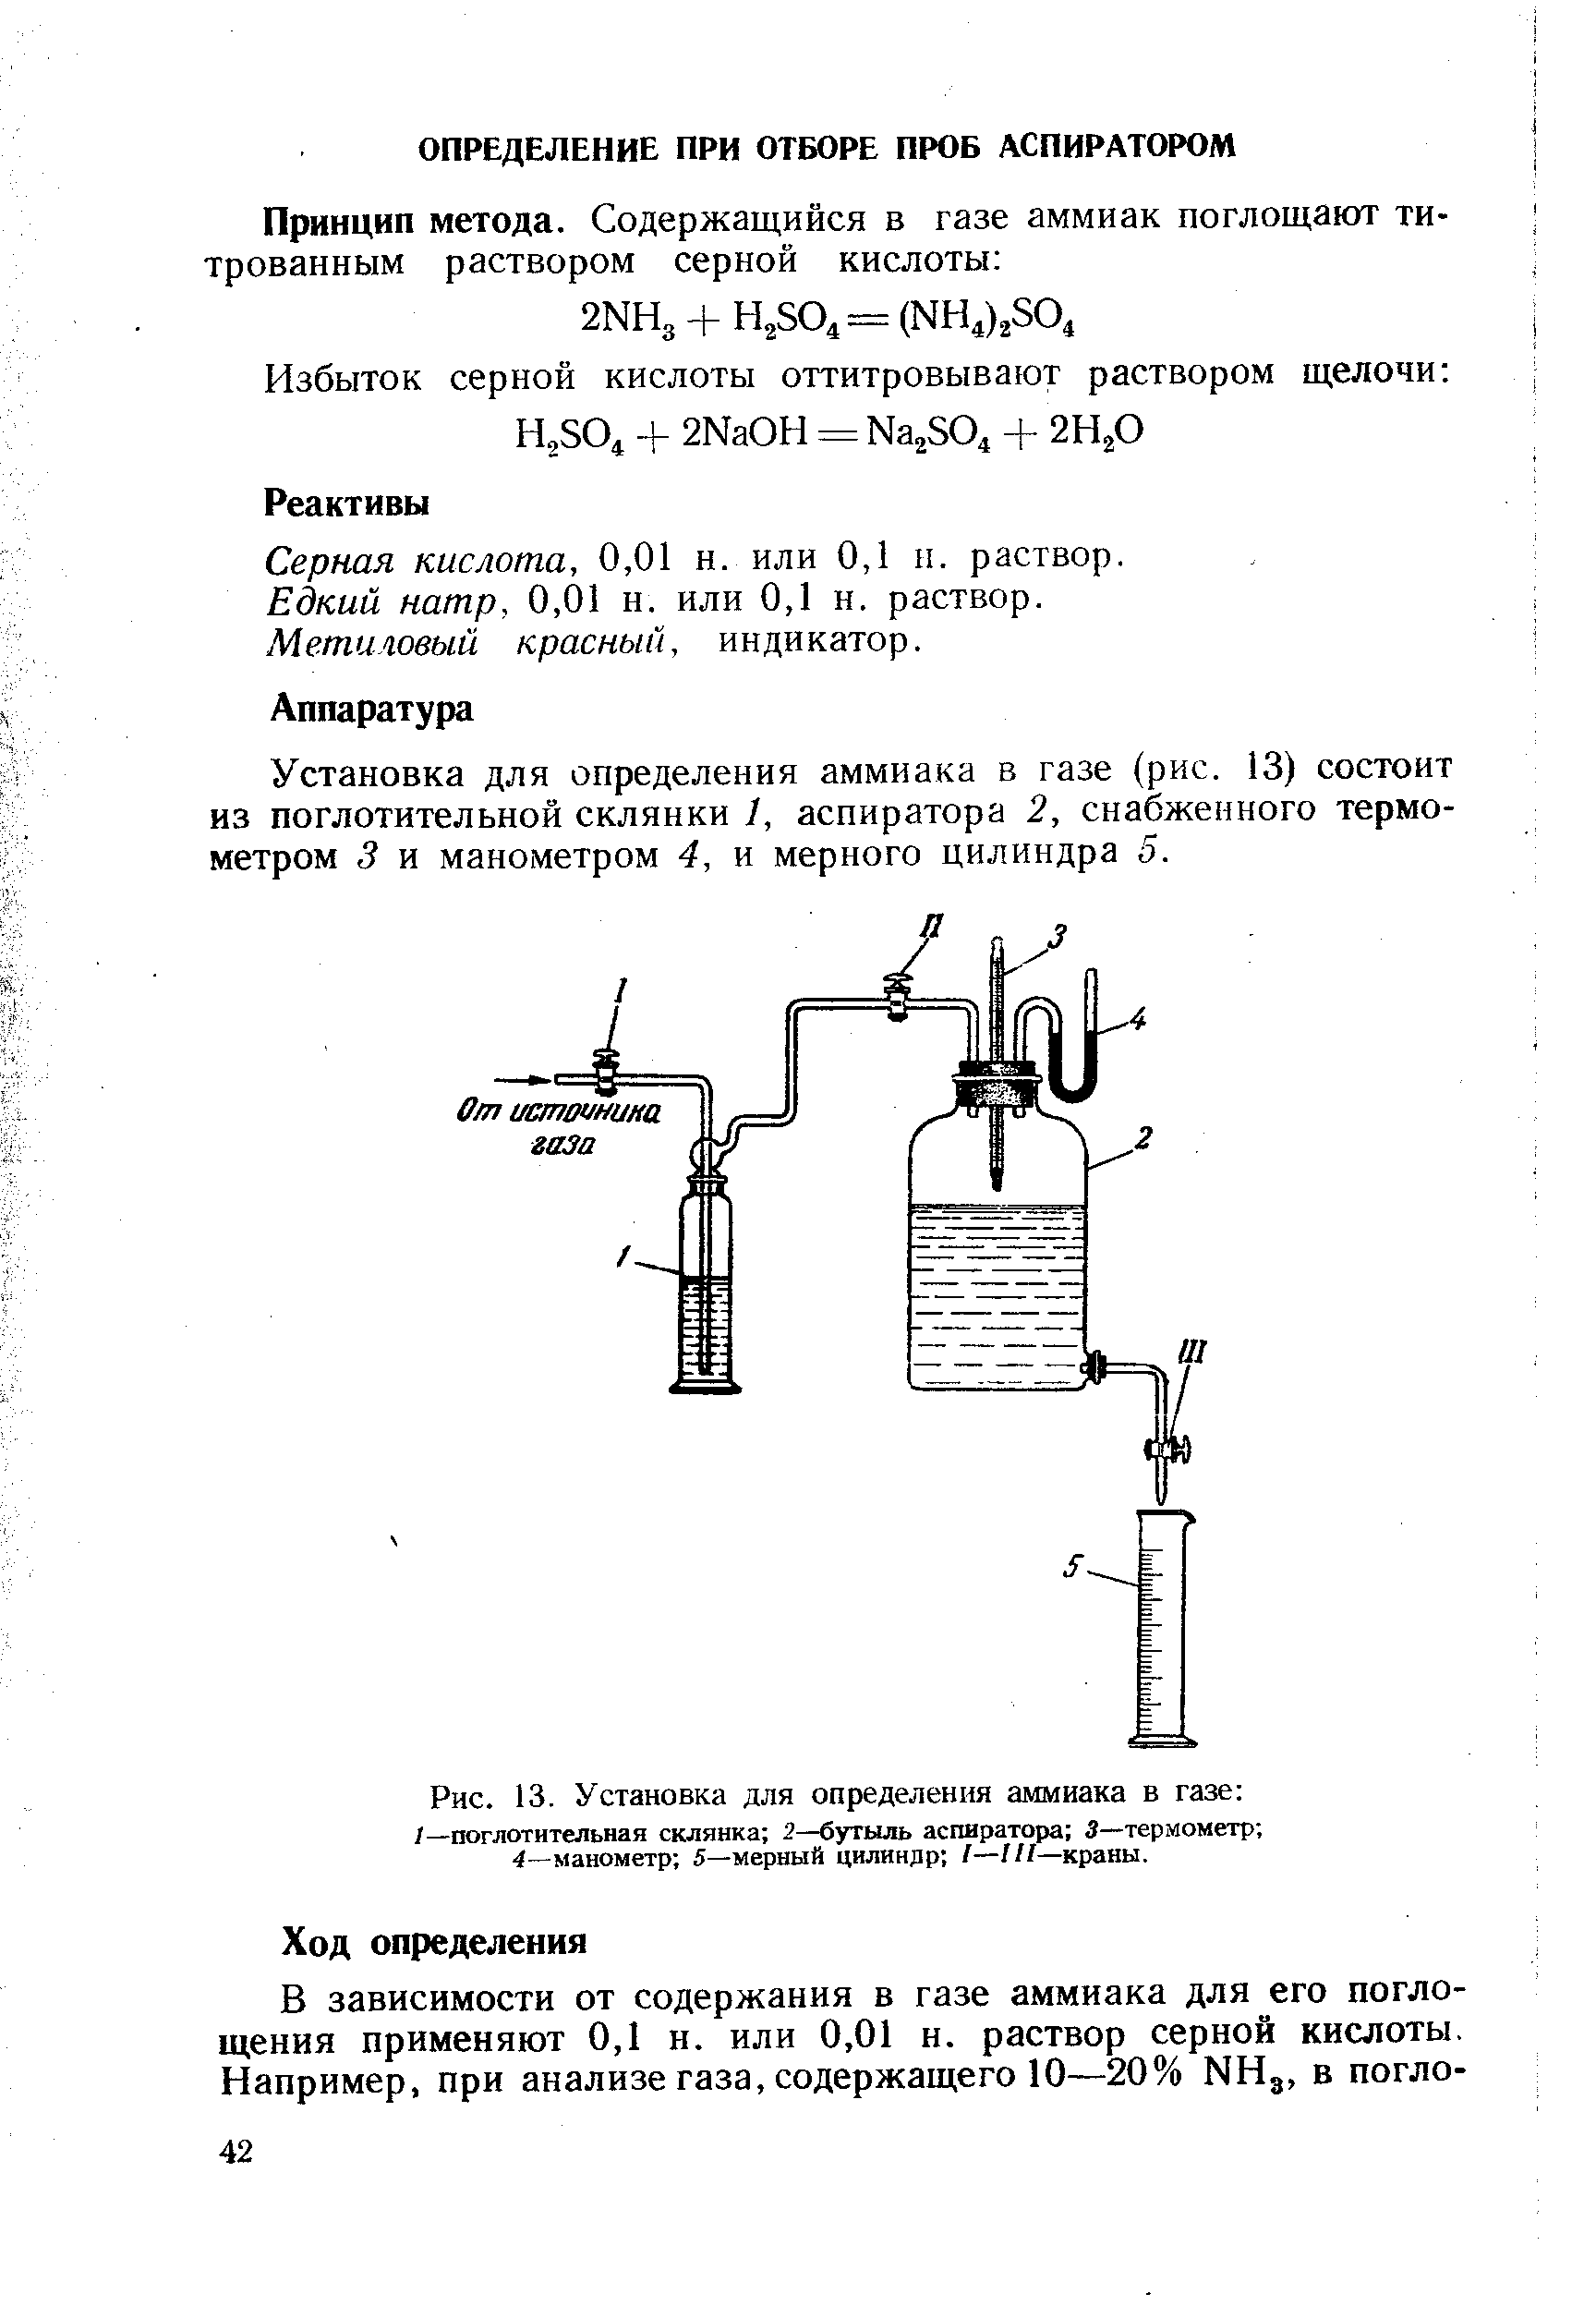 Схема установки для измерения концентрации серной кислоты. Датчик газового анализа аммиака. Определение аммиака. Методы определения аммиака в воздухе. Содержание аммиака в воде